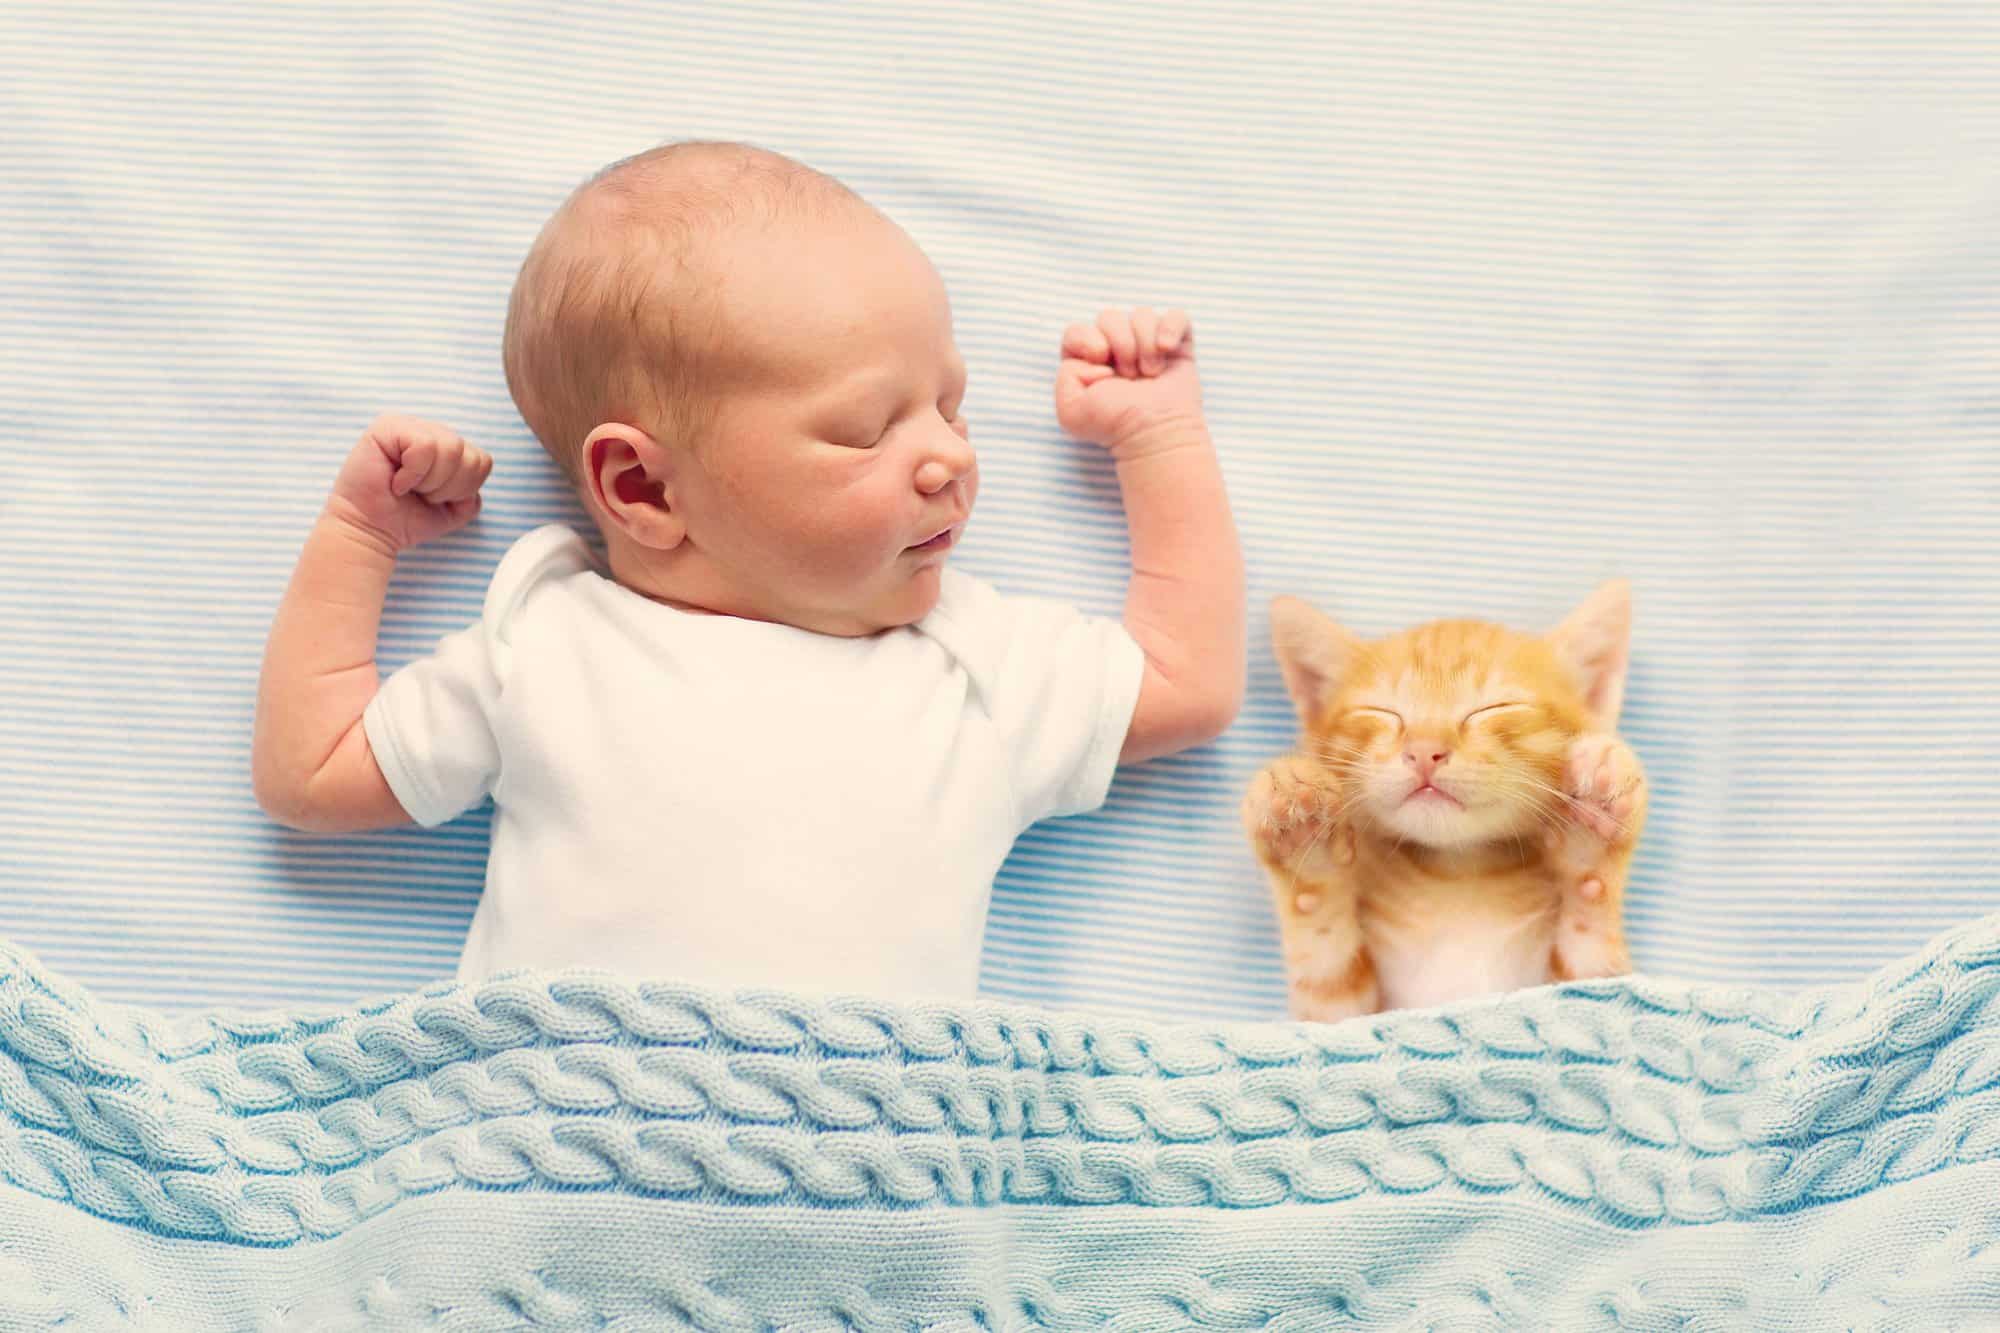 Bebés y gatos: hacerles convivir en armonía